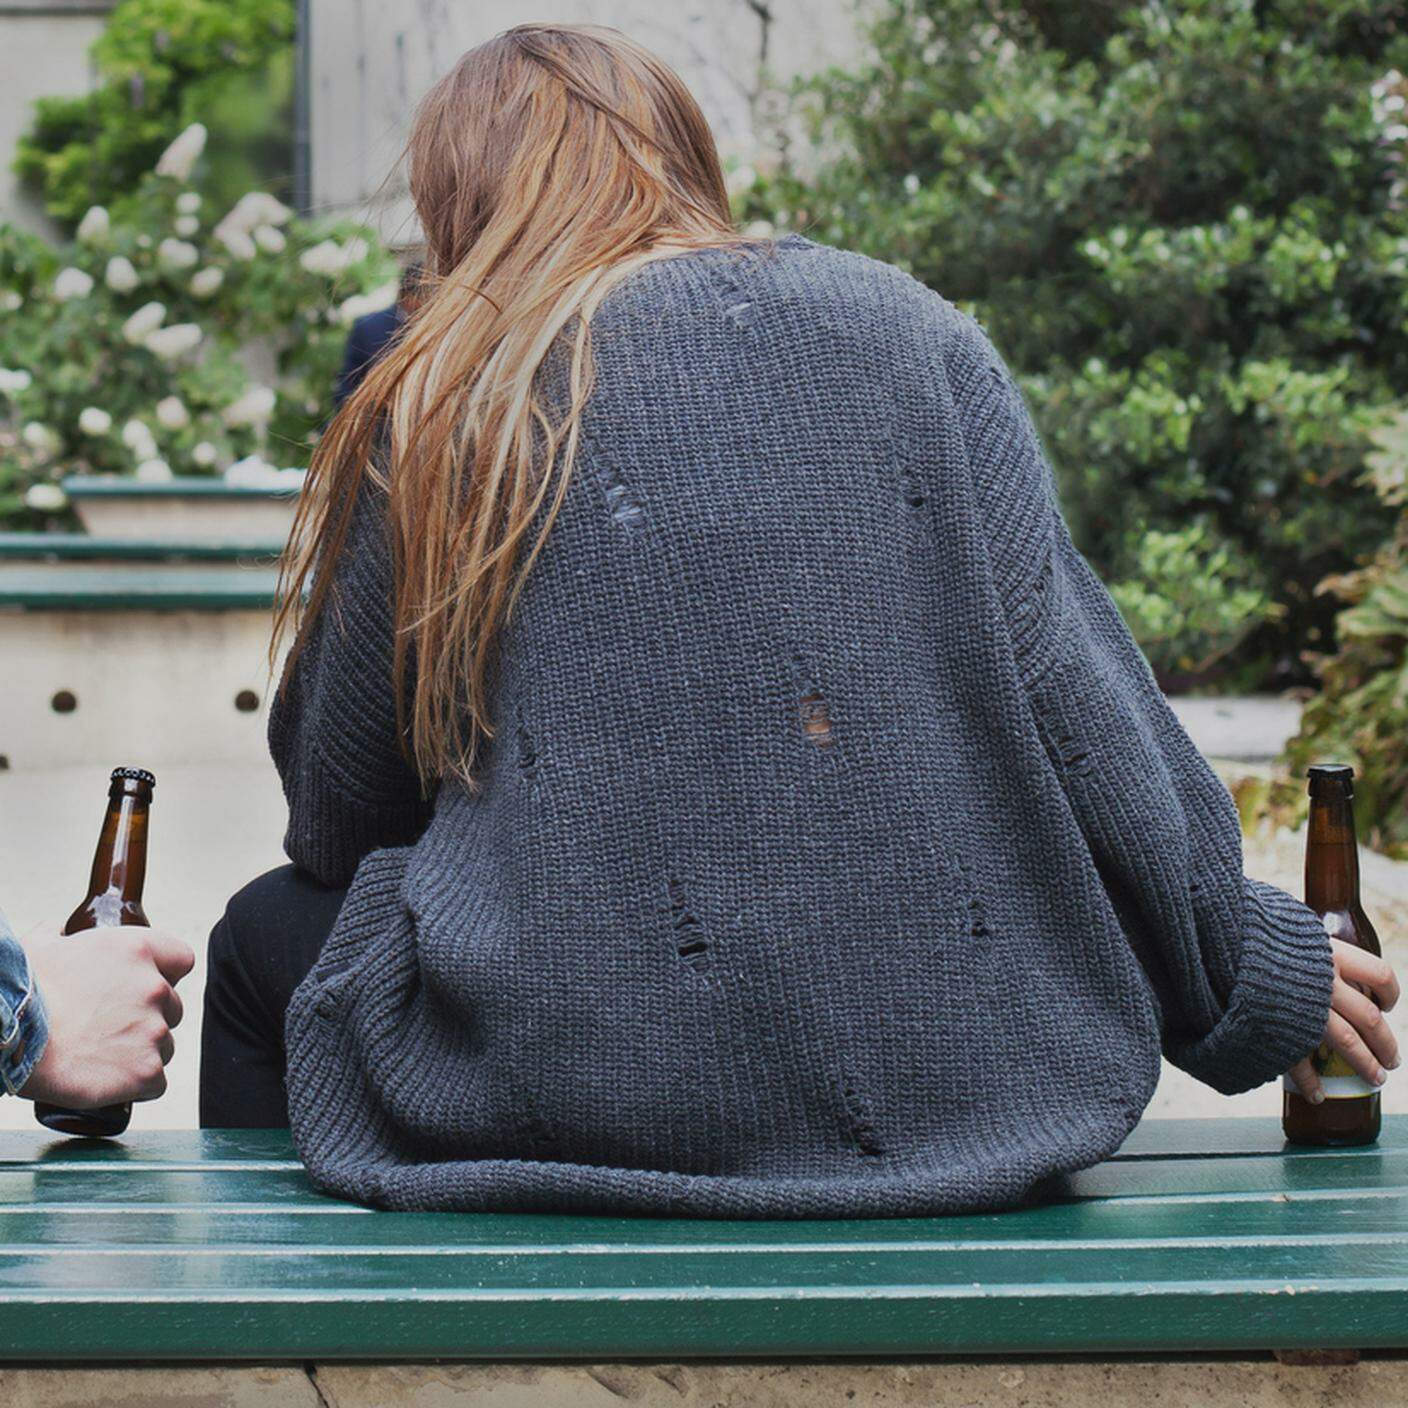 Binge drinking, alcol giovani, adolescenti